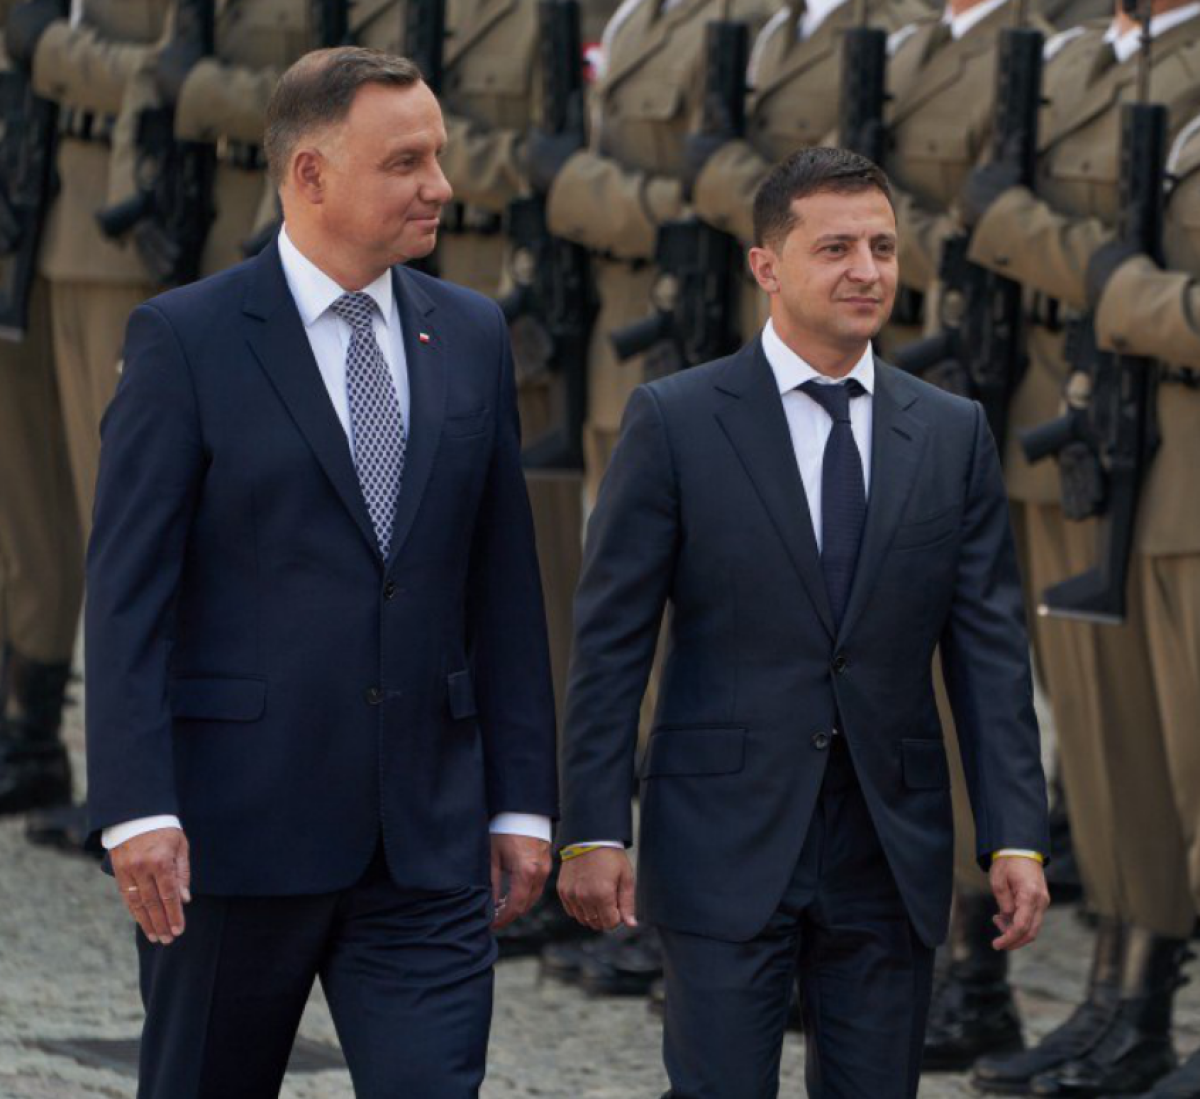  Зеленский встретился с главой Польши. Главное  - фото 1